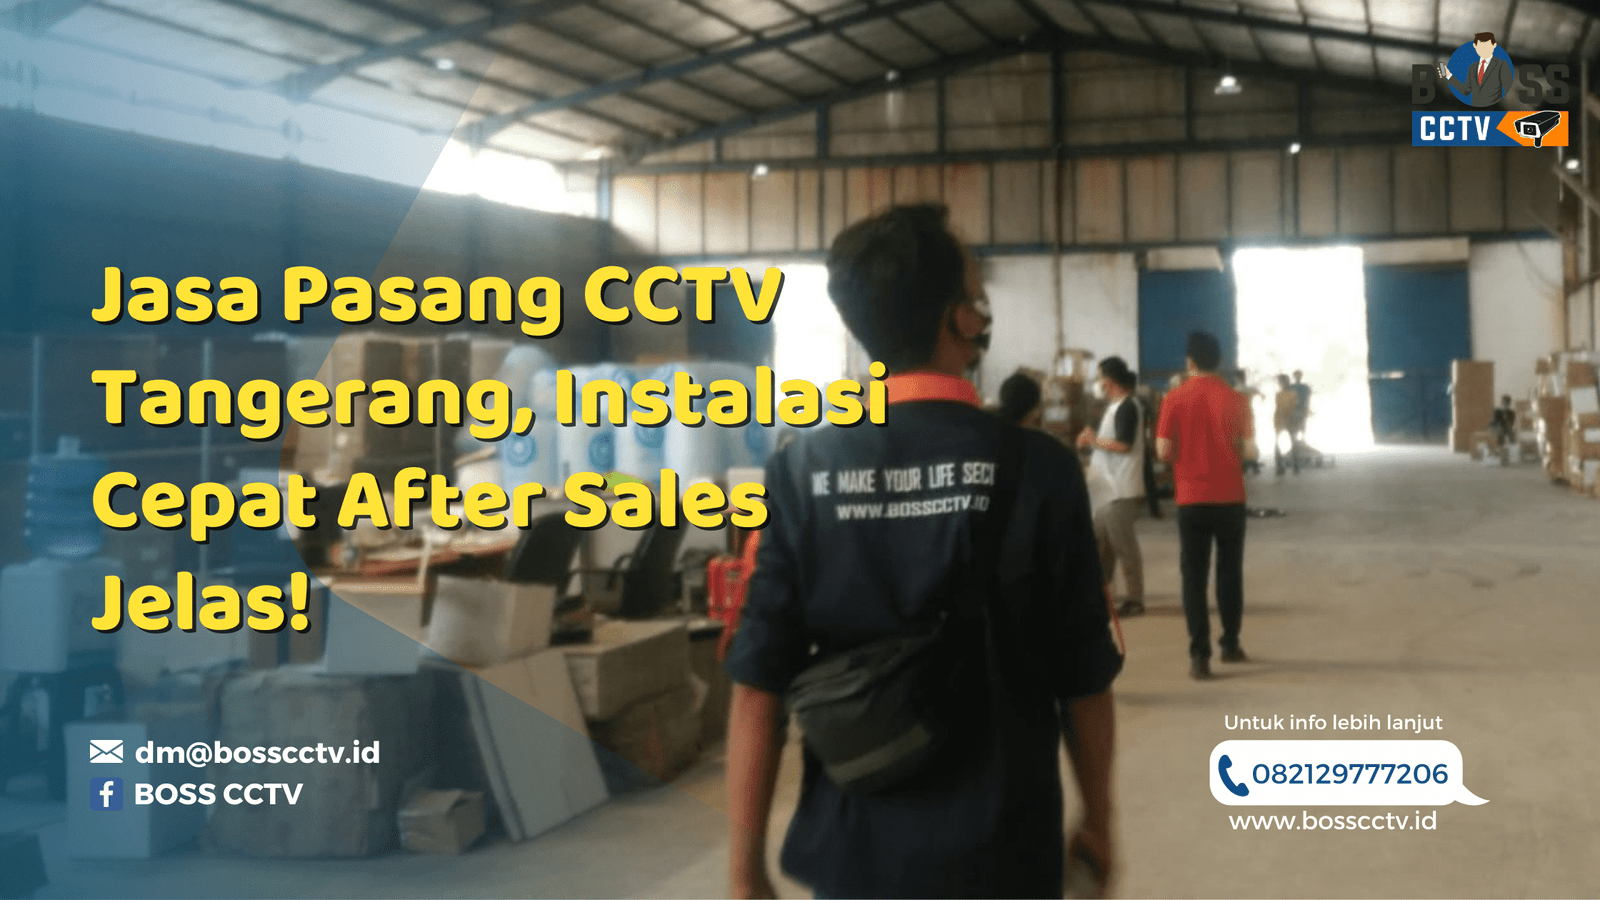 Jasa Pasang CCTV Tangerang, Instalasi Cepat After Sales Jelas!